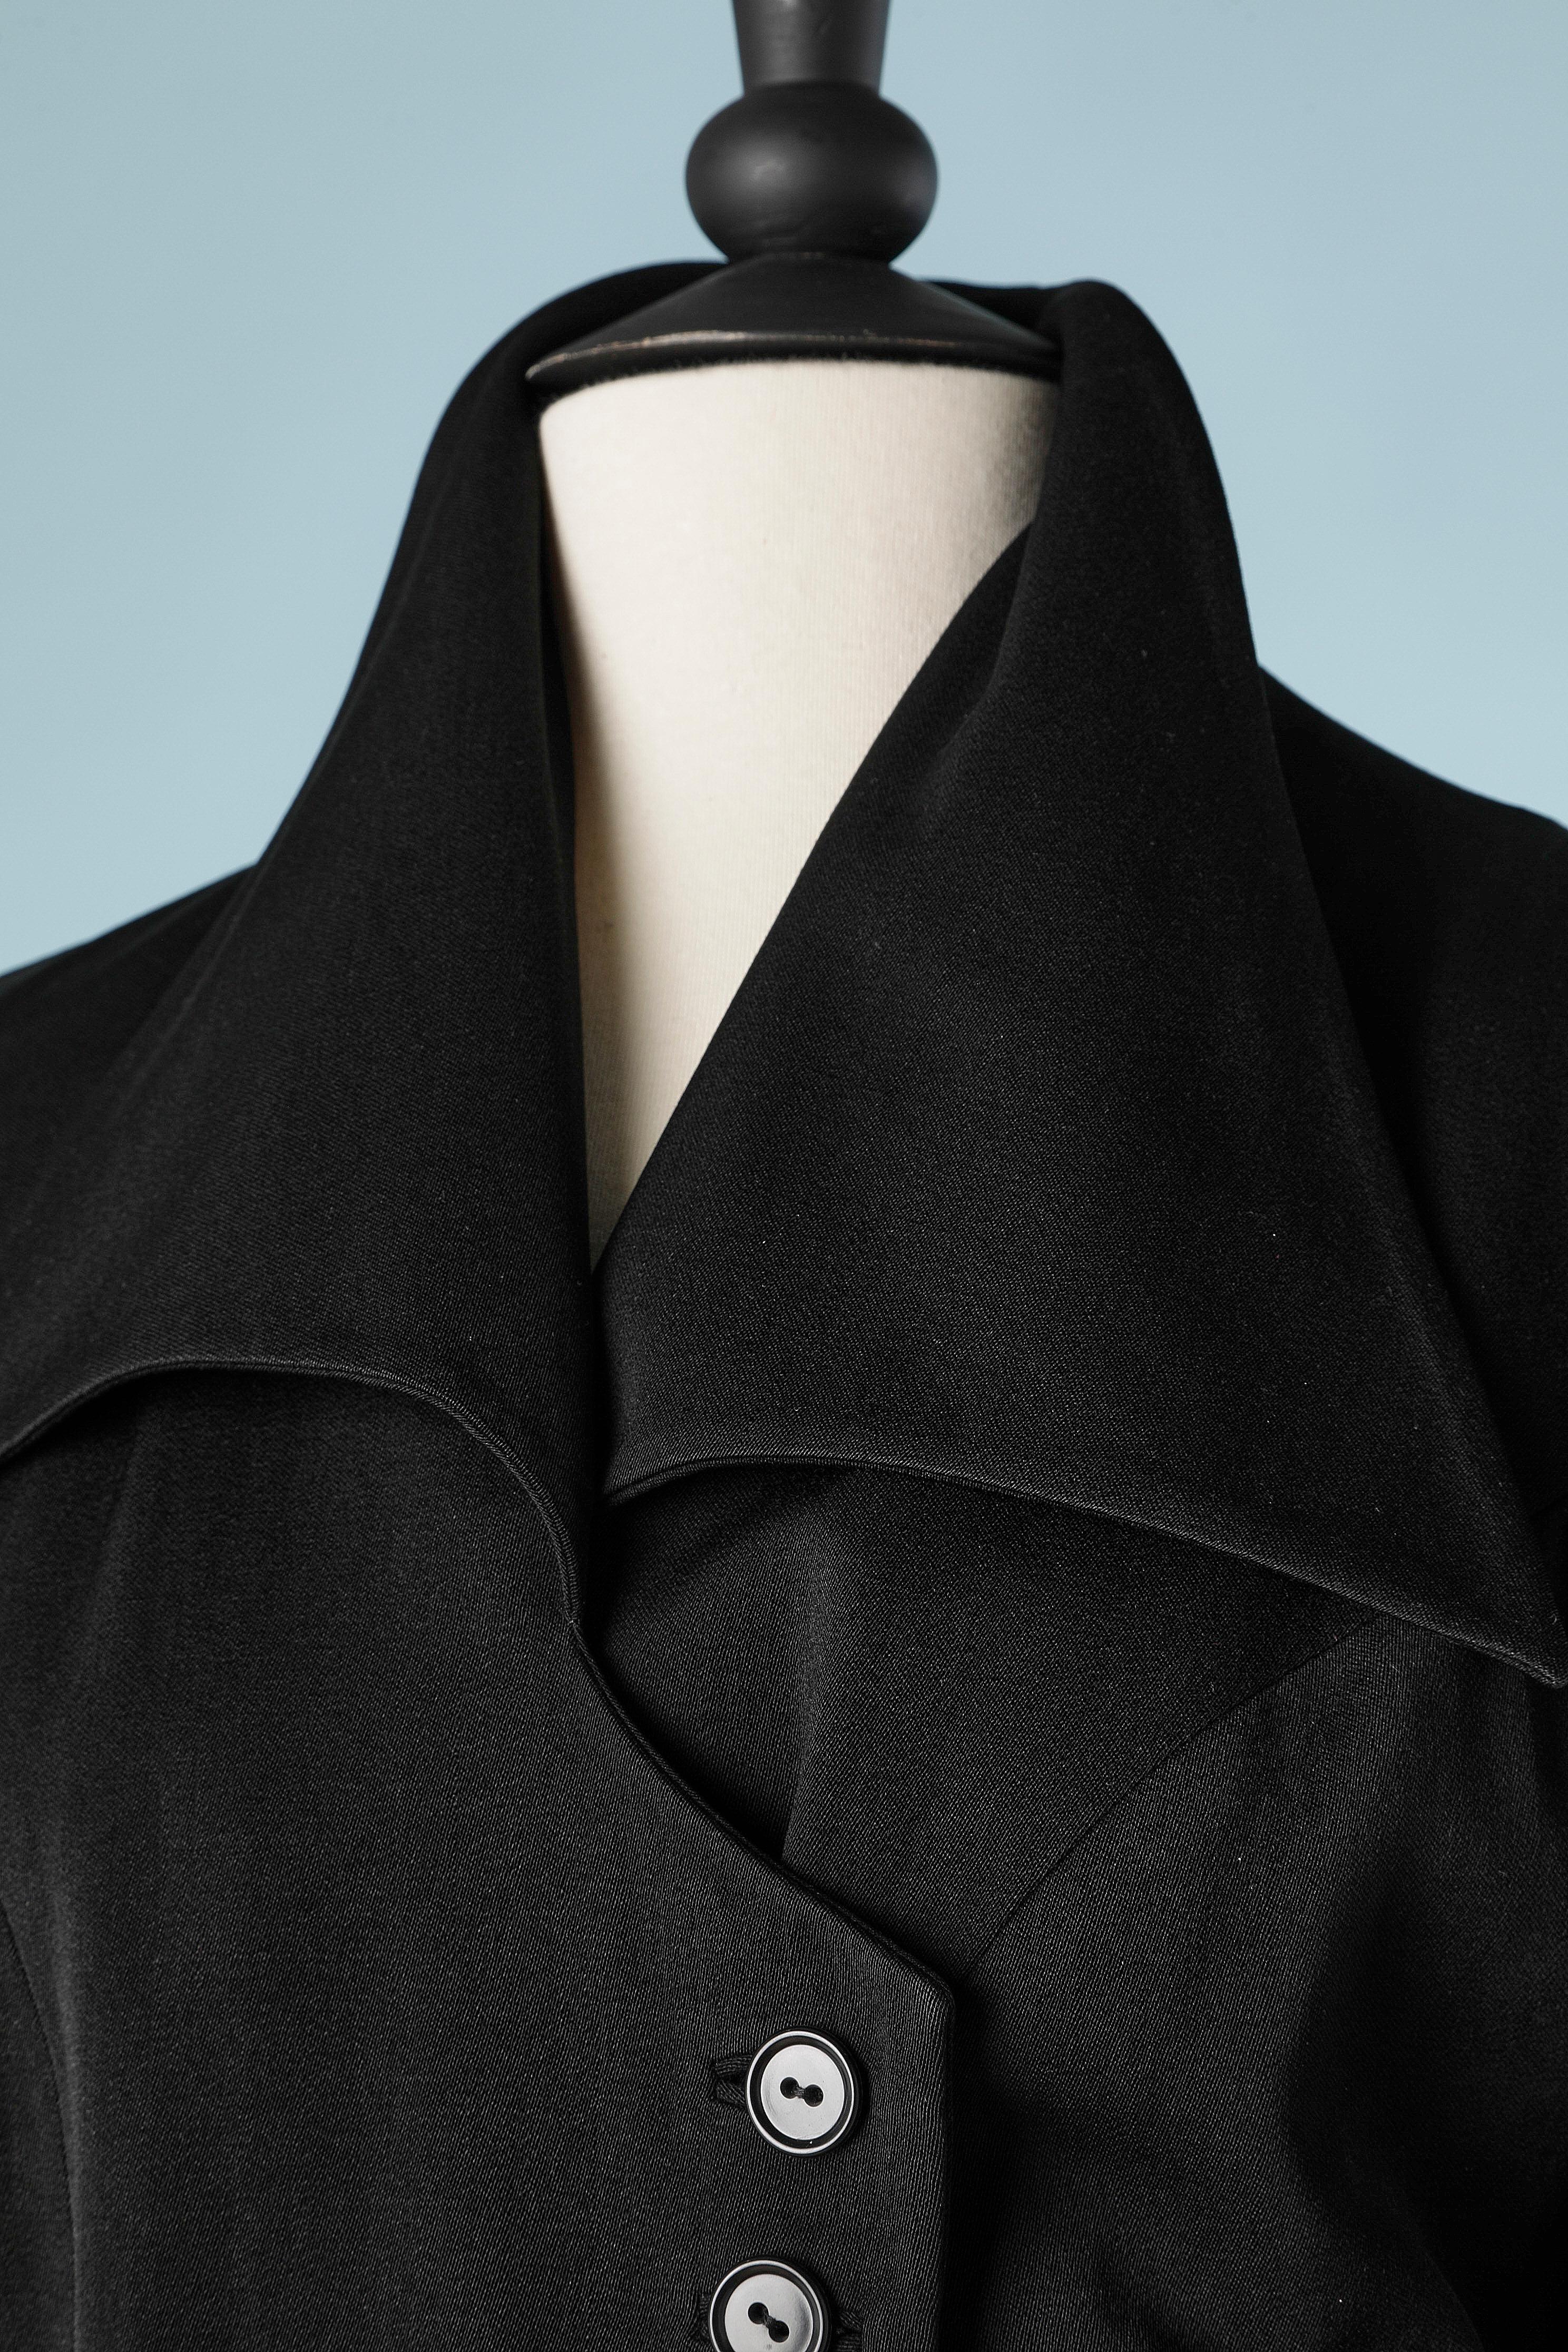 Combinaison jupe en laine noire et veste drapée à double boutonnage. Bouton-pression à l'intérieur pour le garder à portée de main. Bouton et boutonnière  sur les poignets et derrière la nuque sur le col. Doublure en rayonne ou acétate marron.